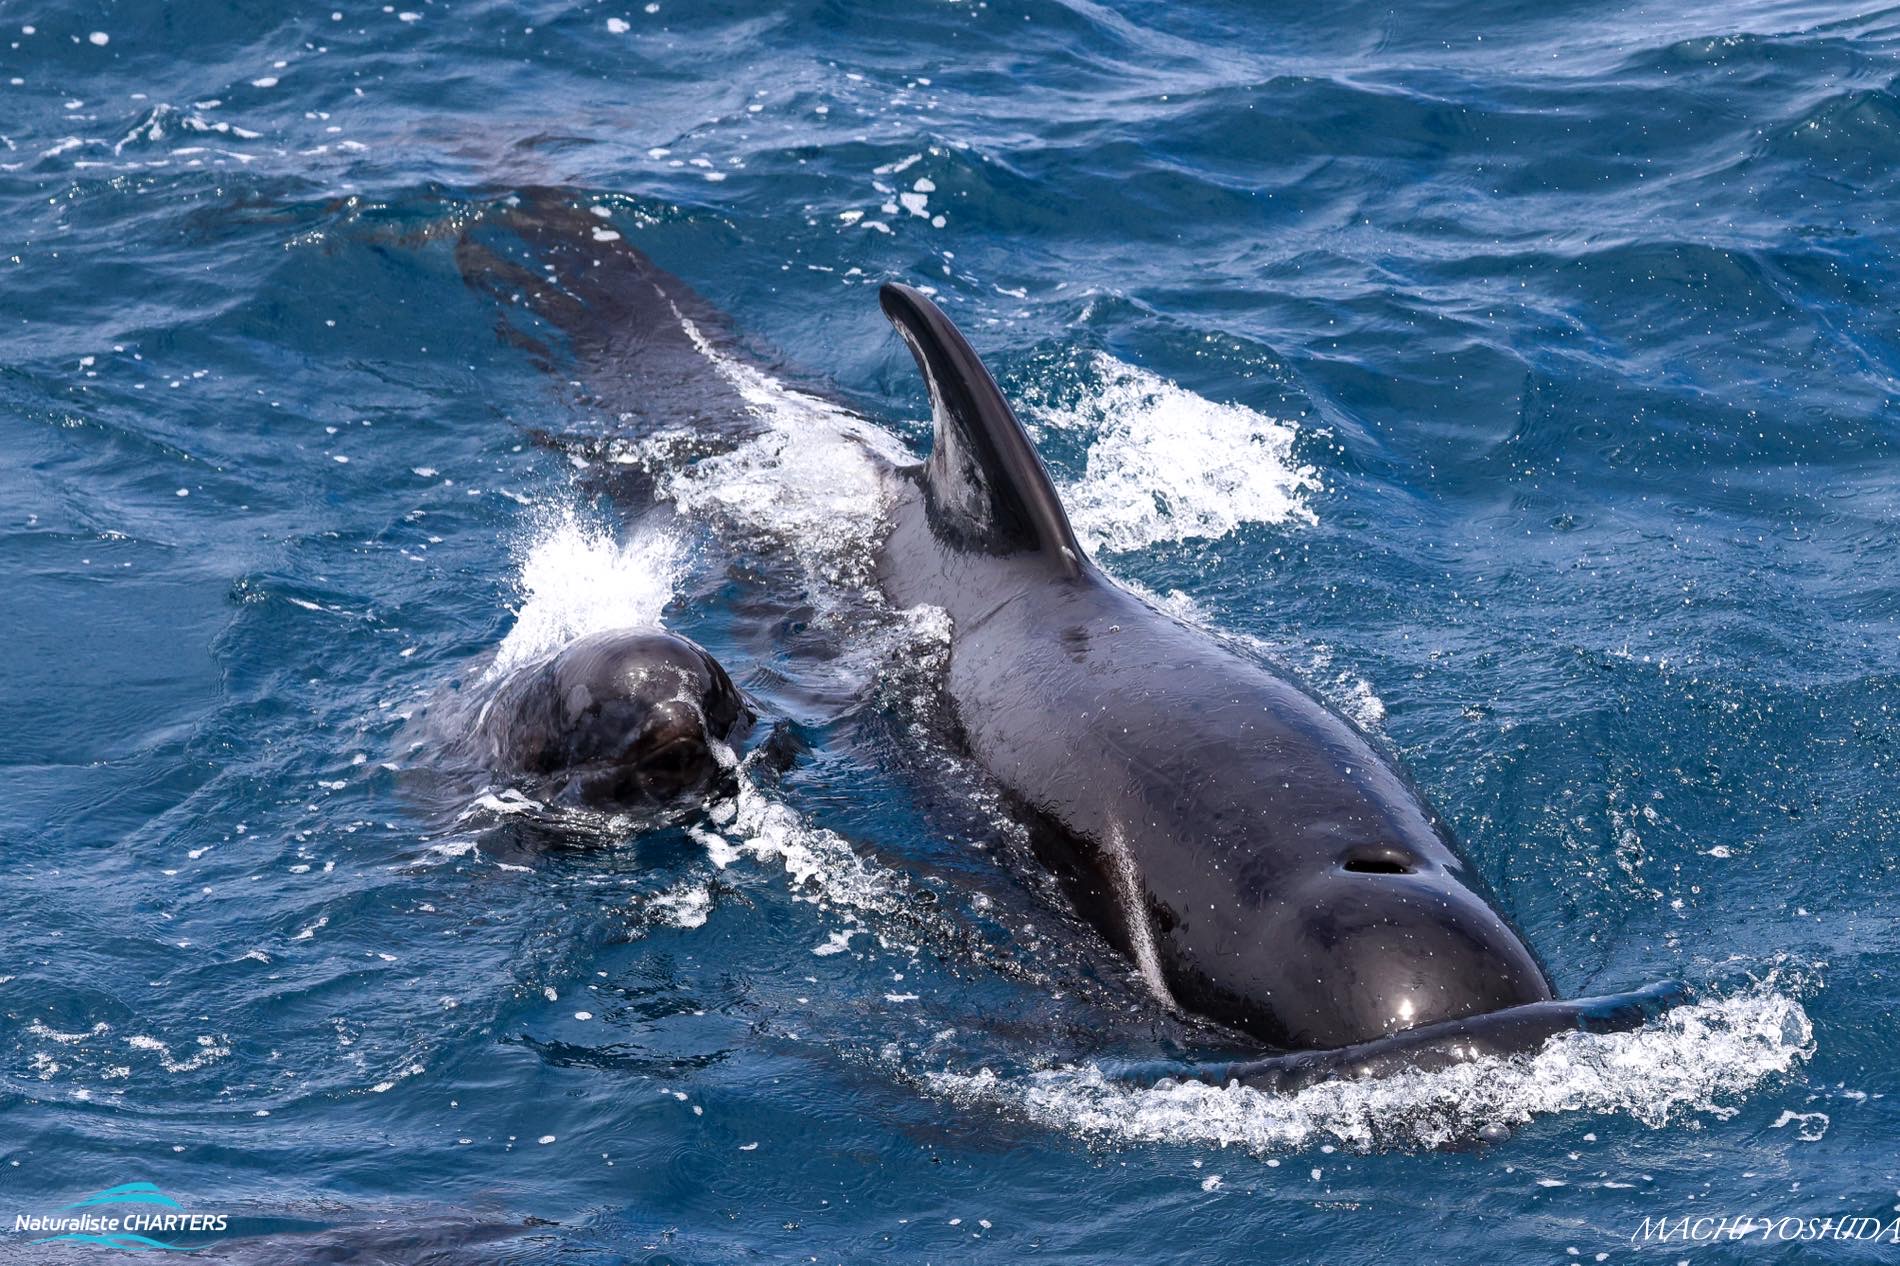 A pilot whale calf follows its mother